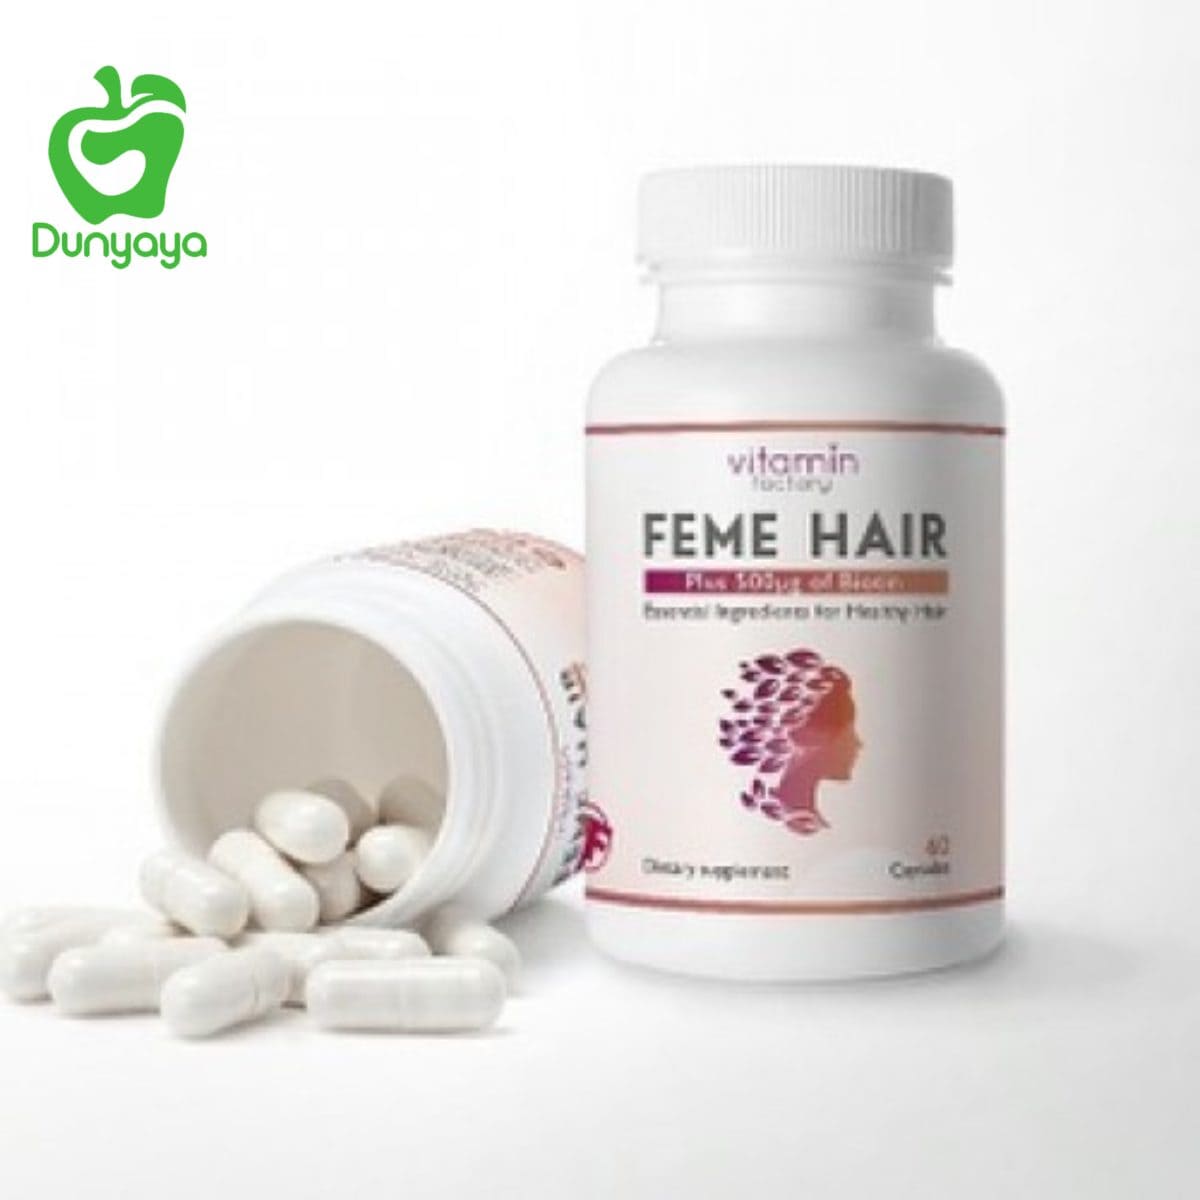 حبوب فيمي هير امازون- فوائد حبوب فيتامين هير feme hair